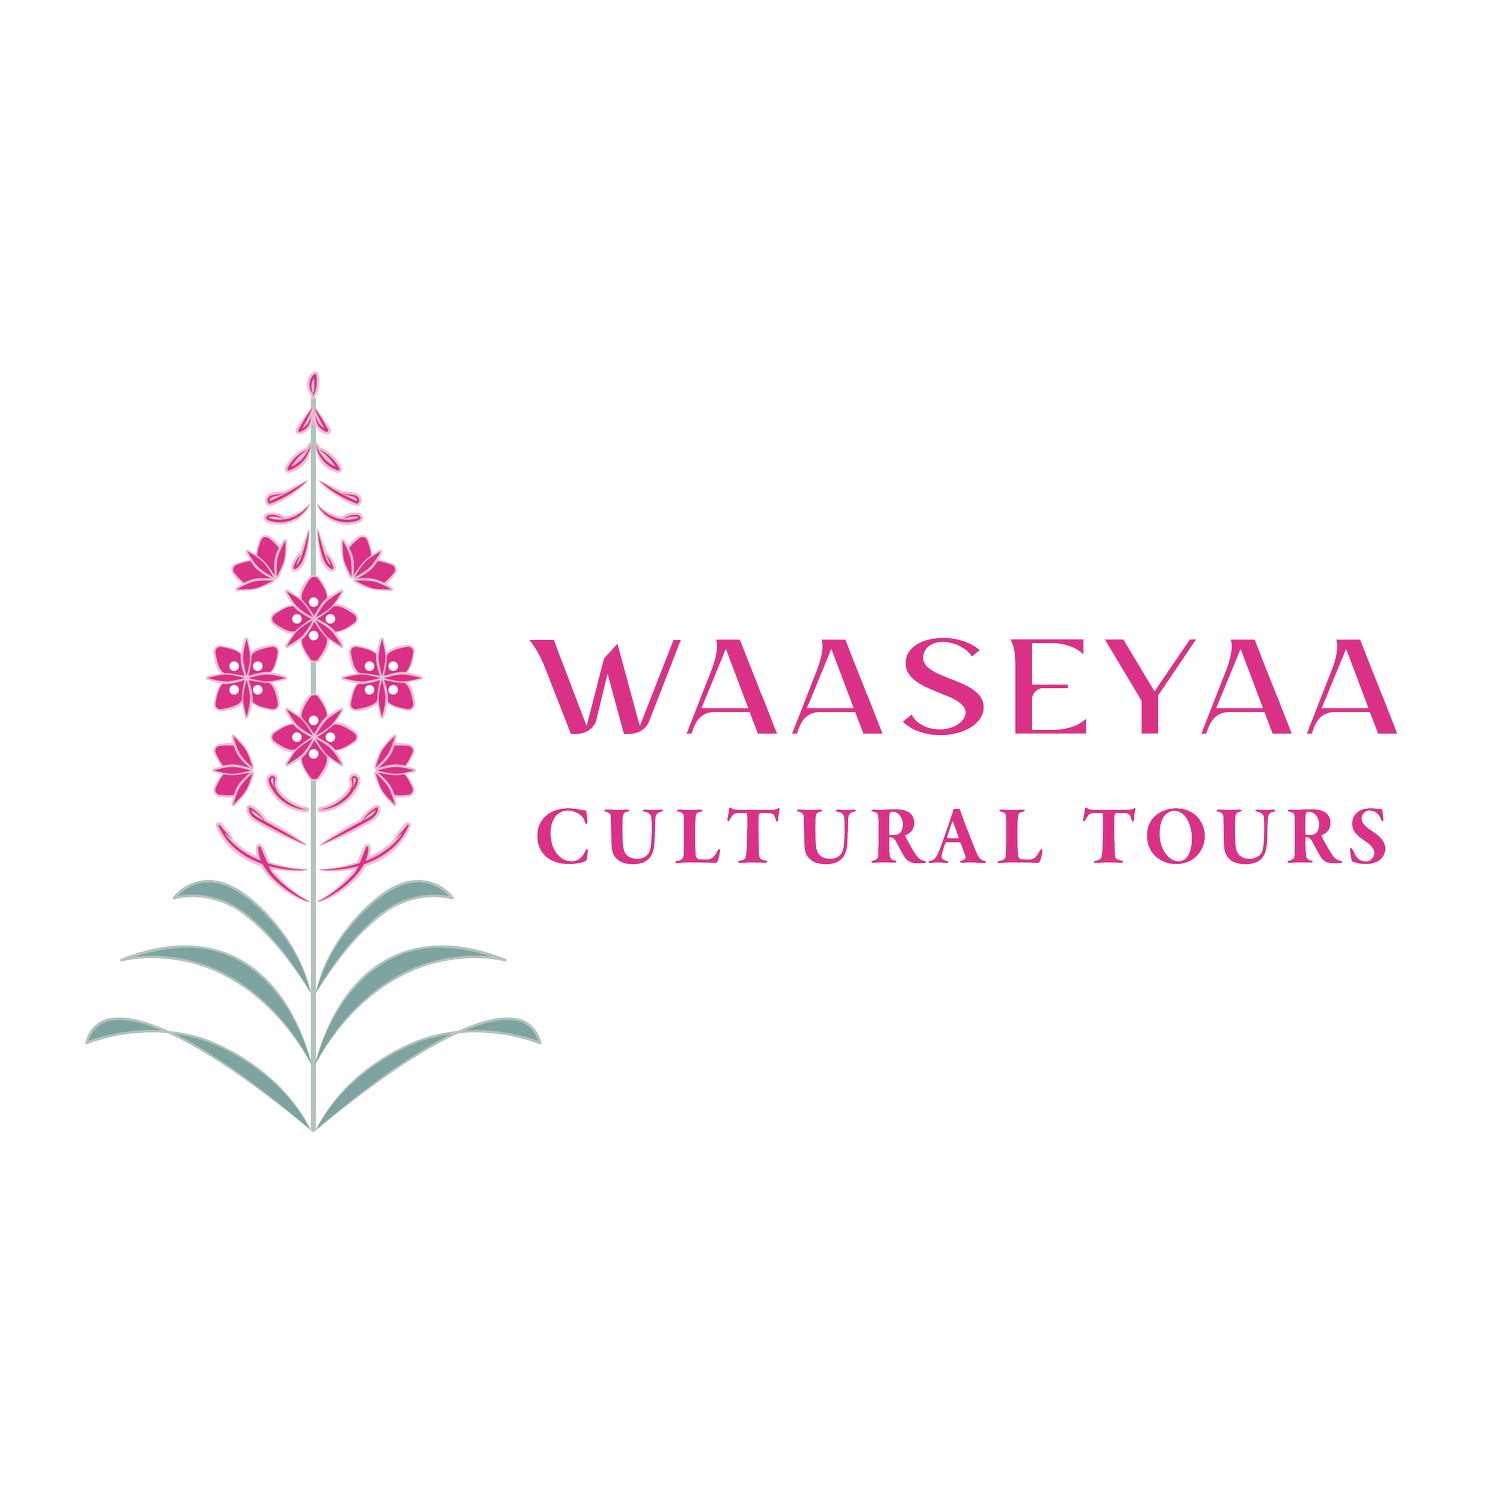 Waaseyaa Cultural Tours